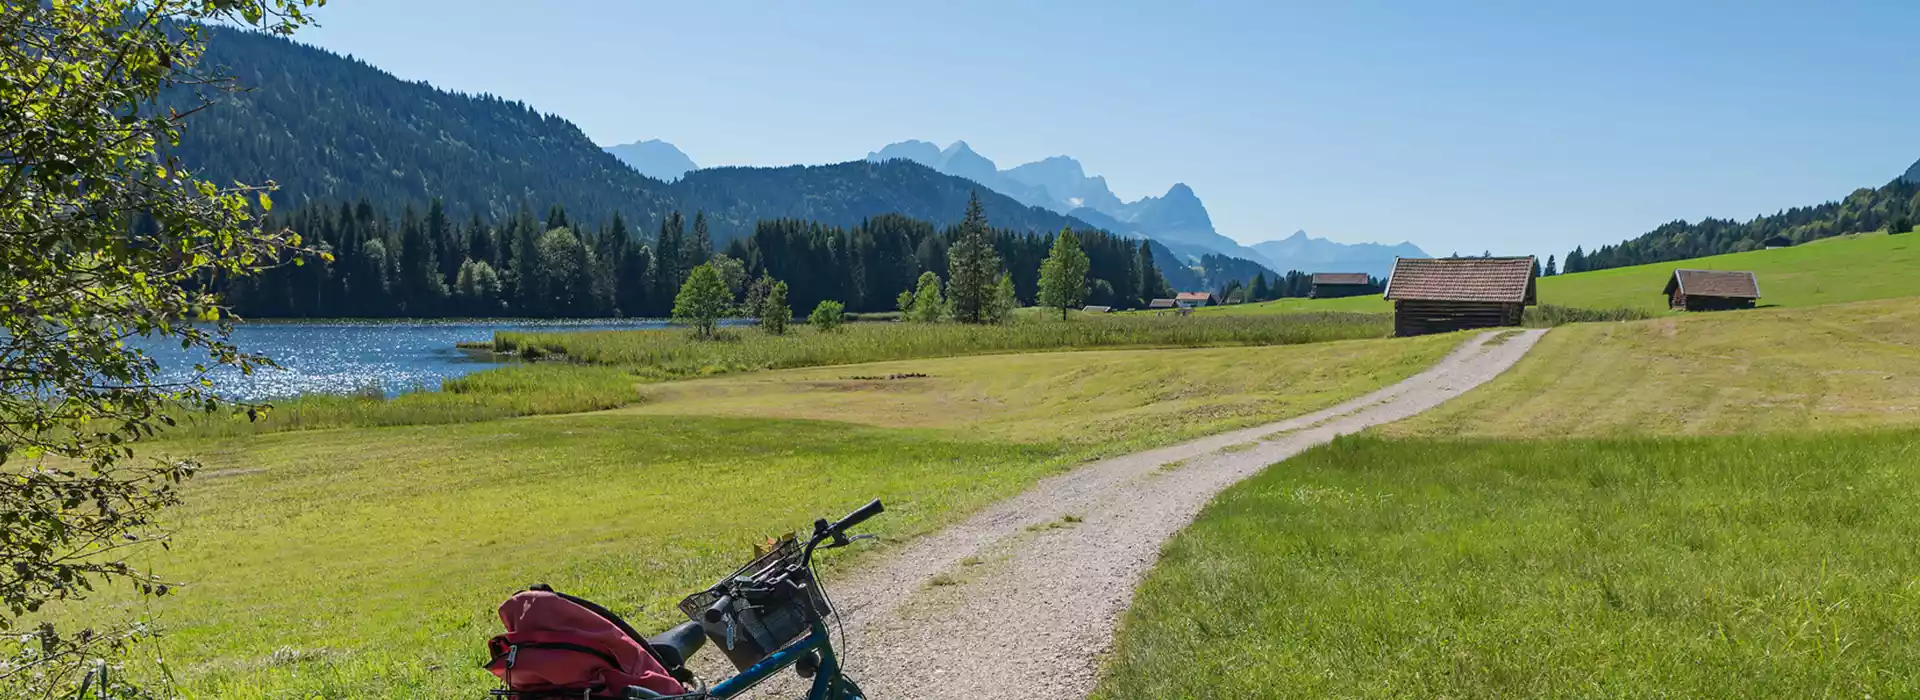 Ferienwohnungen für Fahrradtour und Mountenbiketouren im Karwendel